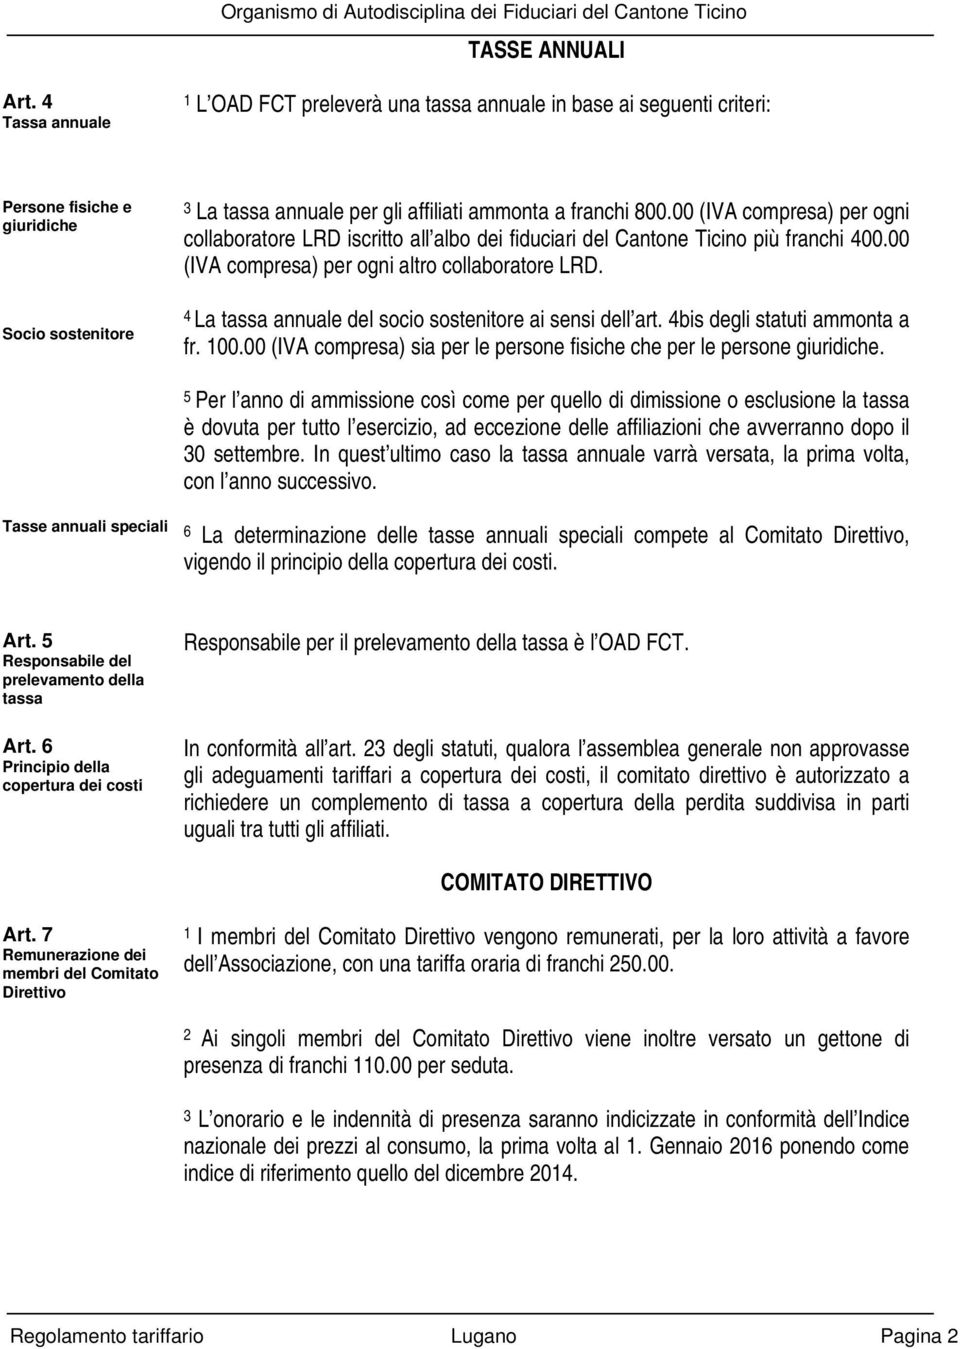 00 (IVA compresa) per ogni collaboratore LRD iscritto all albo dei fiduciari del Cantone Ticino più franchi 400.00 (IVA compresa) per ogni altro collaboratore LRD.